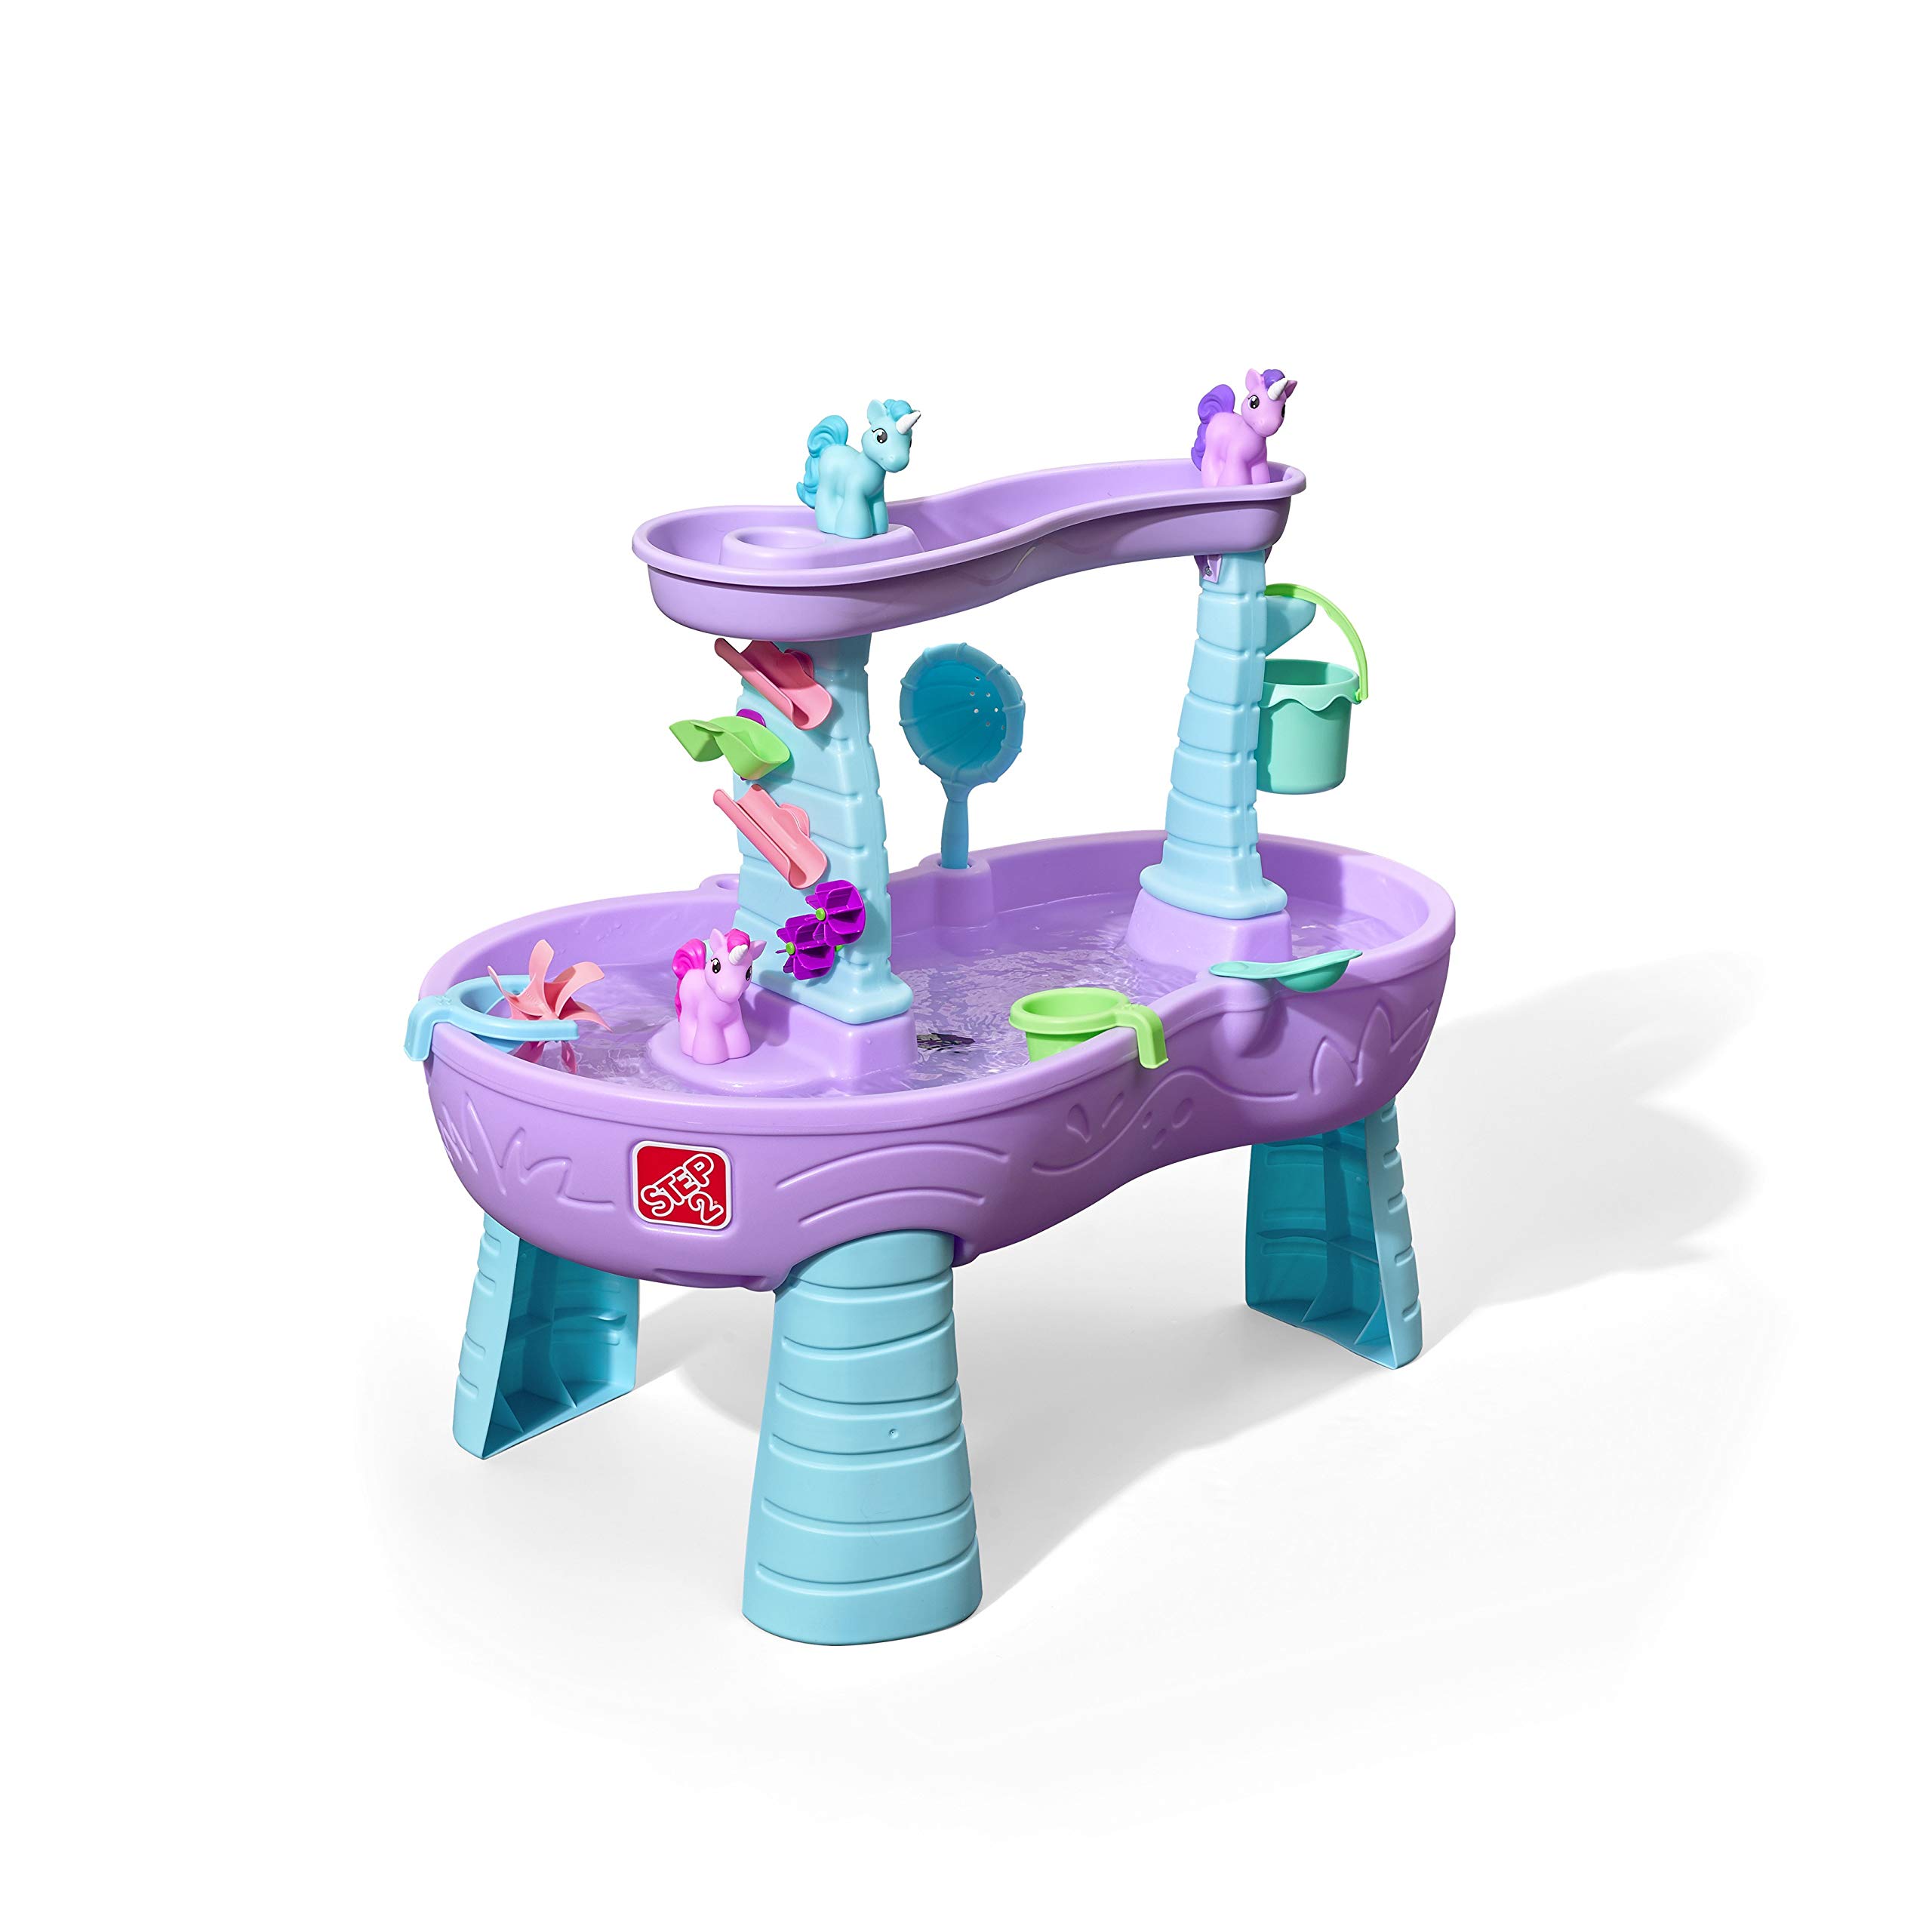  Step2 Водный стол с дождевым душем и единорогами Детский фиолетовый игровой стол с водой и набором аксессуаров...